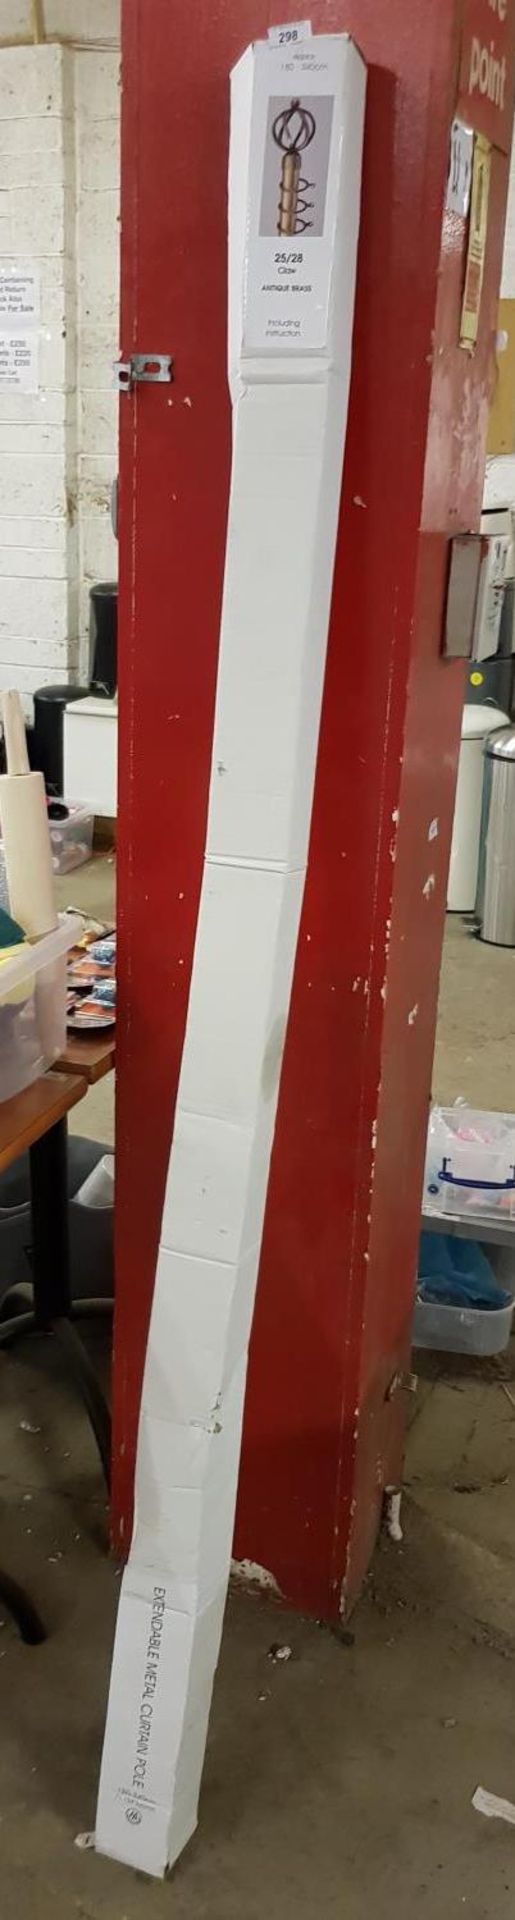 Extendable Metal Curtain Pole – Antique